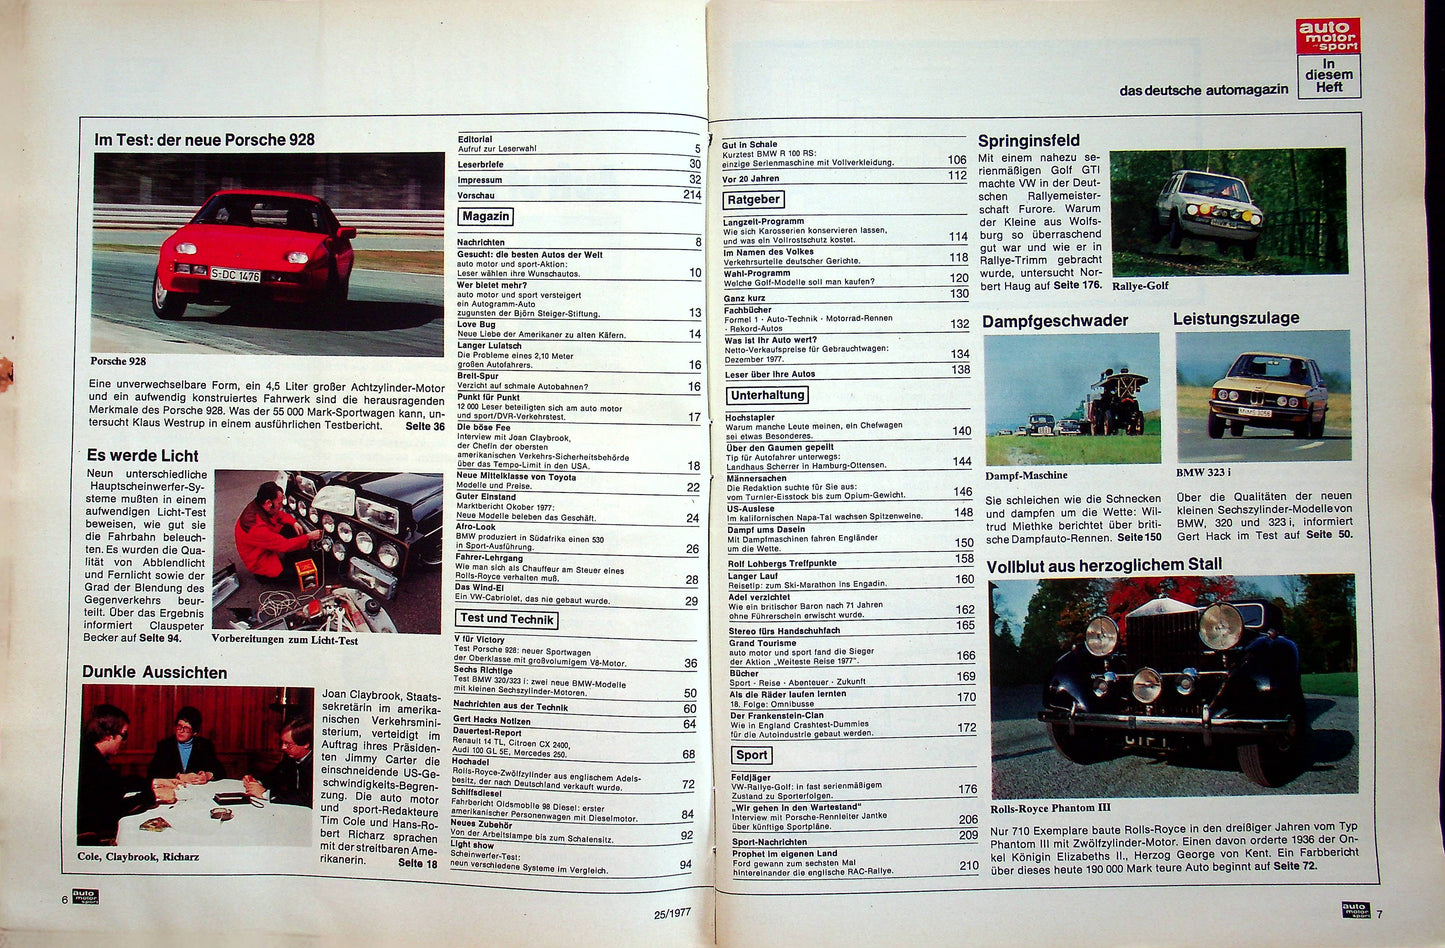 Auto Motor und Sport 25/1977